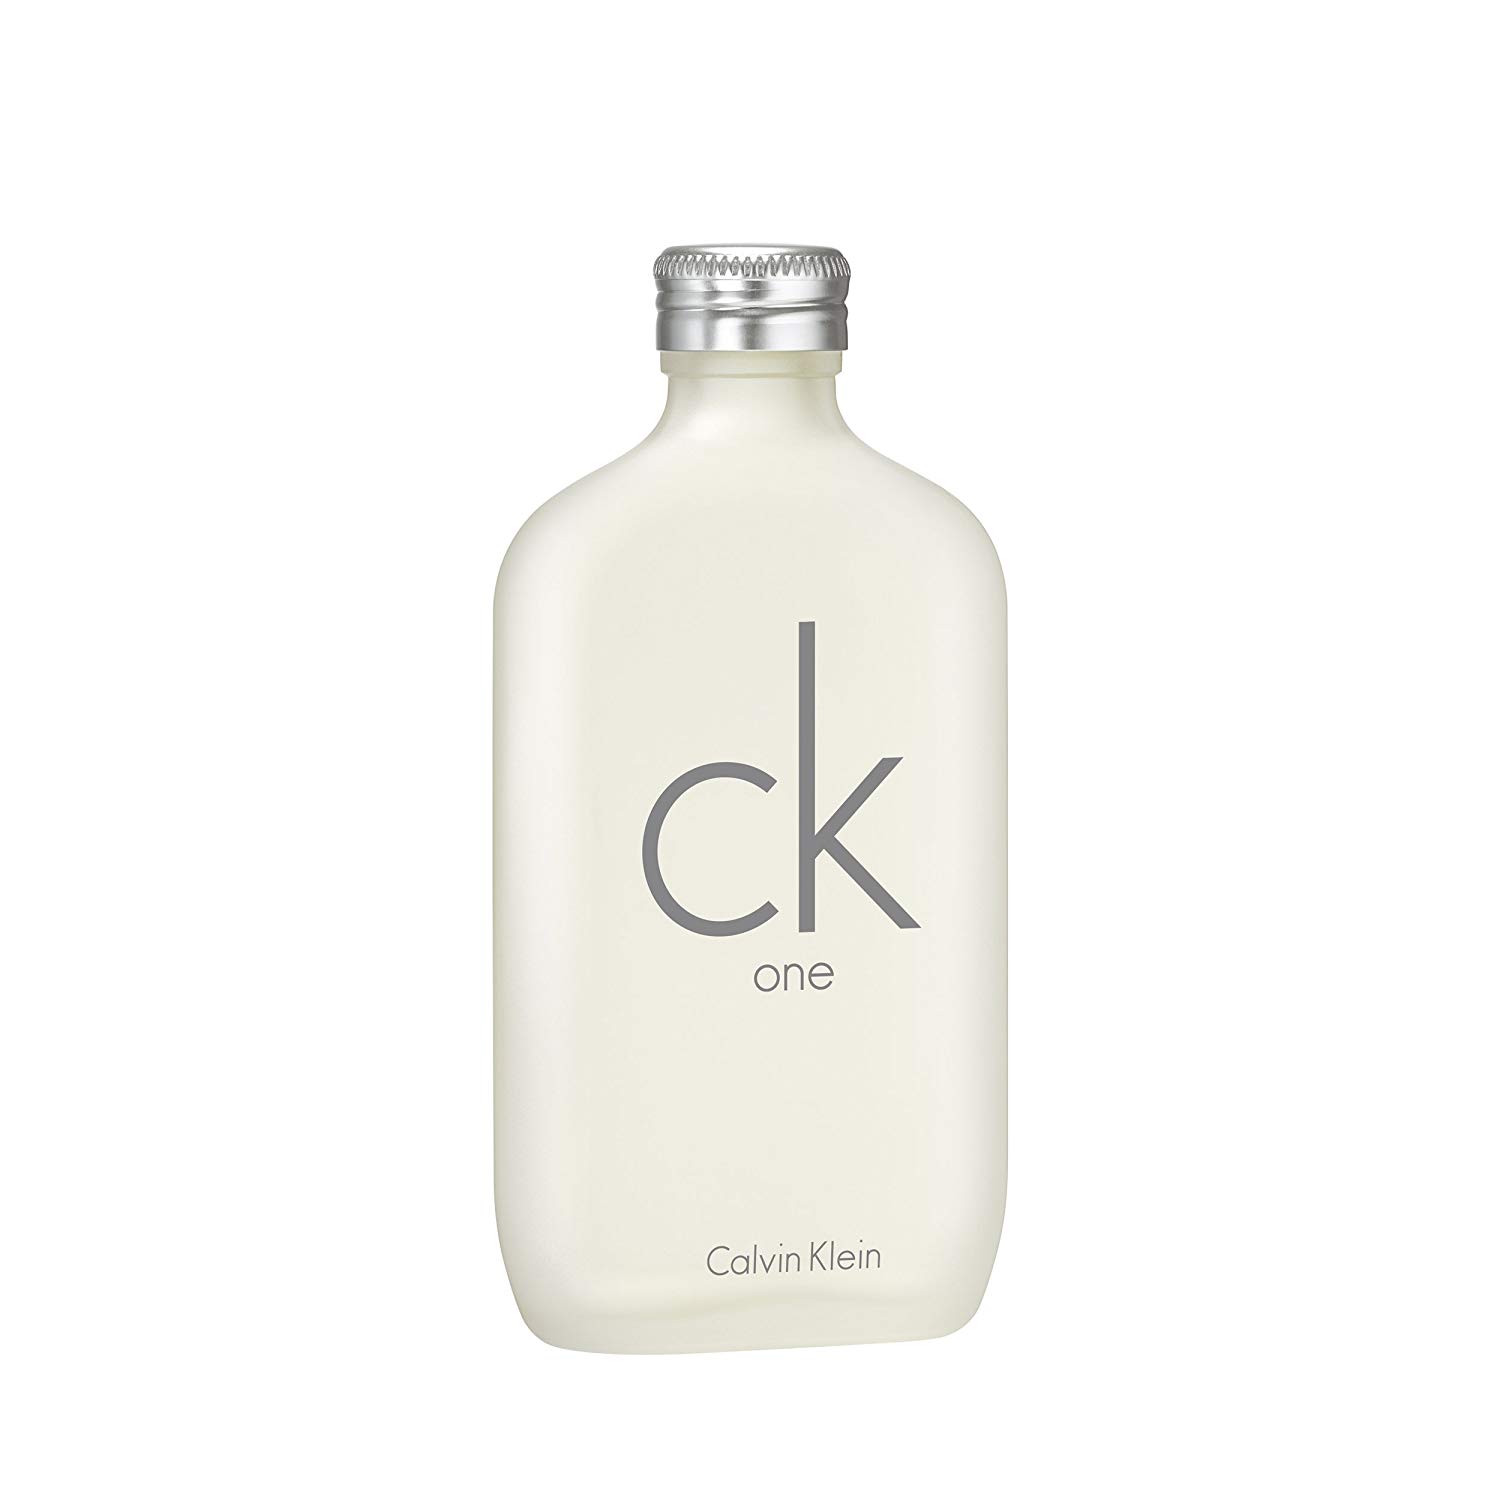 CK One 200ml EDT by Calvin Klein for Men & Women